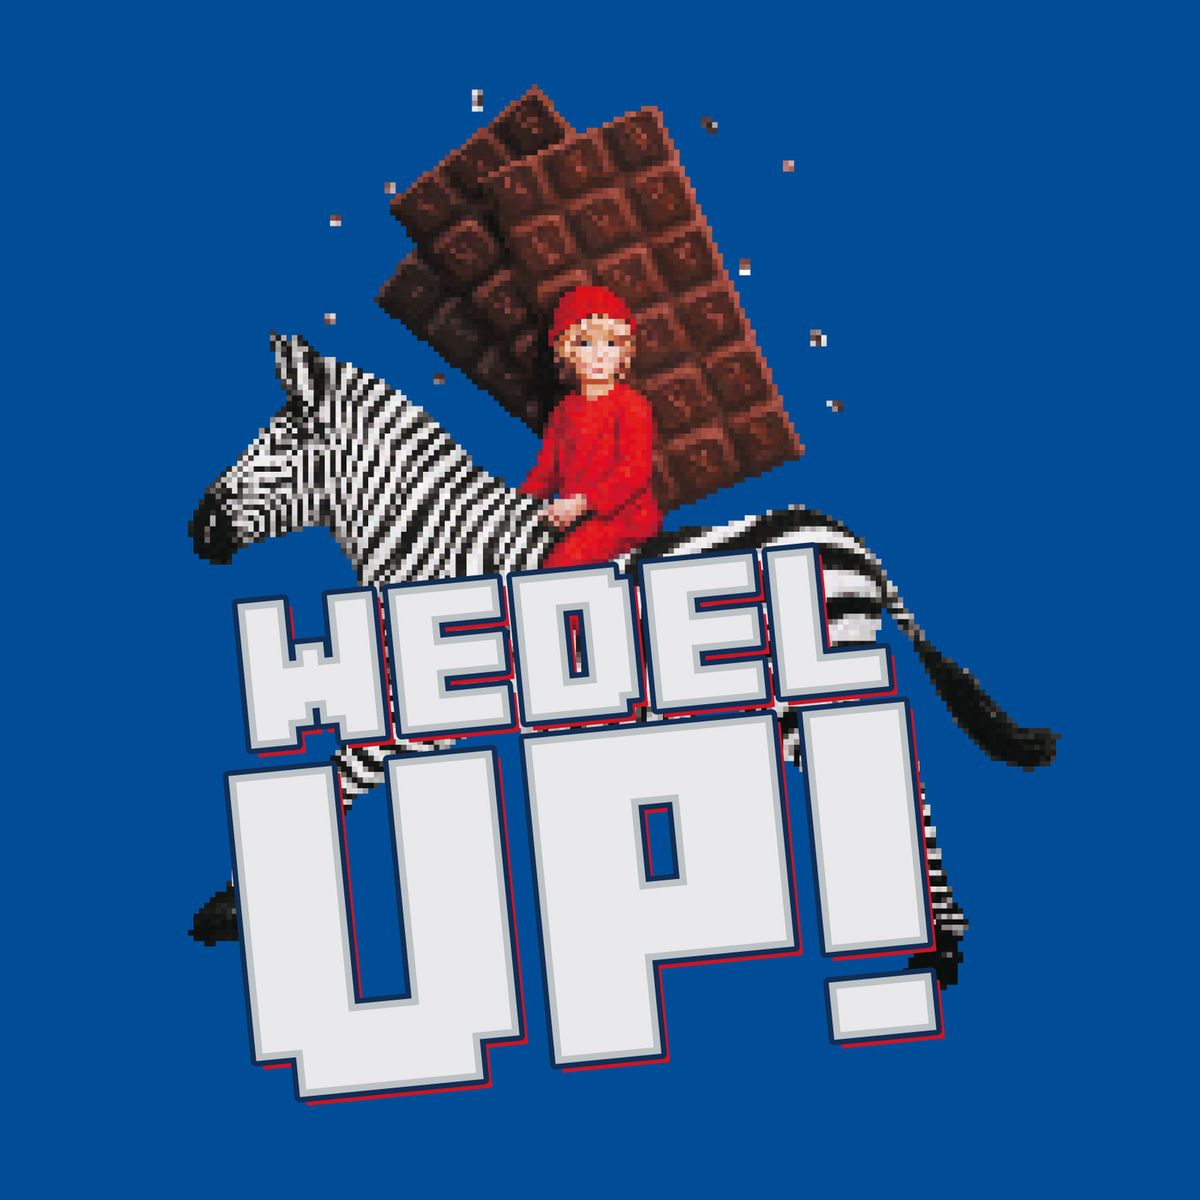 Zagrajmy Inaczej! E. Wedel ponownie przywraca dziecięcą radość w graczach z platformą Wedel Up!